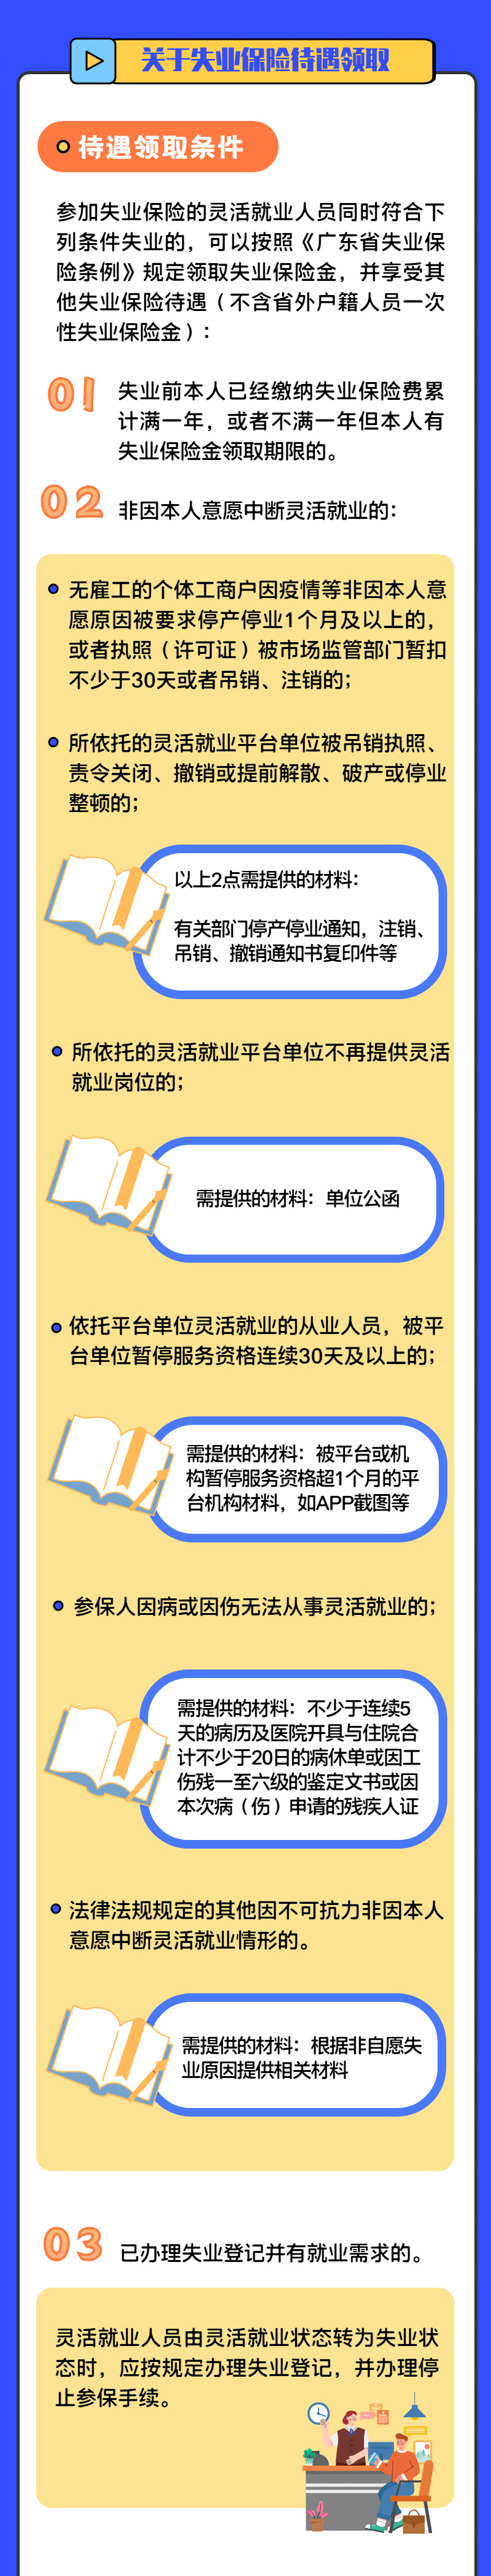 深圳灵活就业人员失业保险参保政策解读